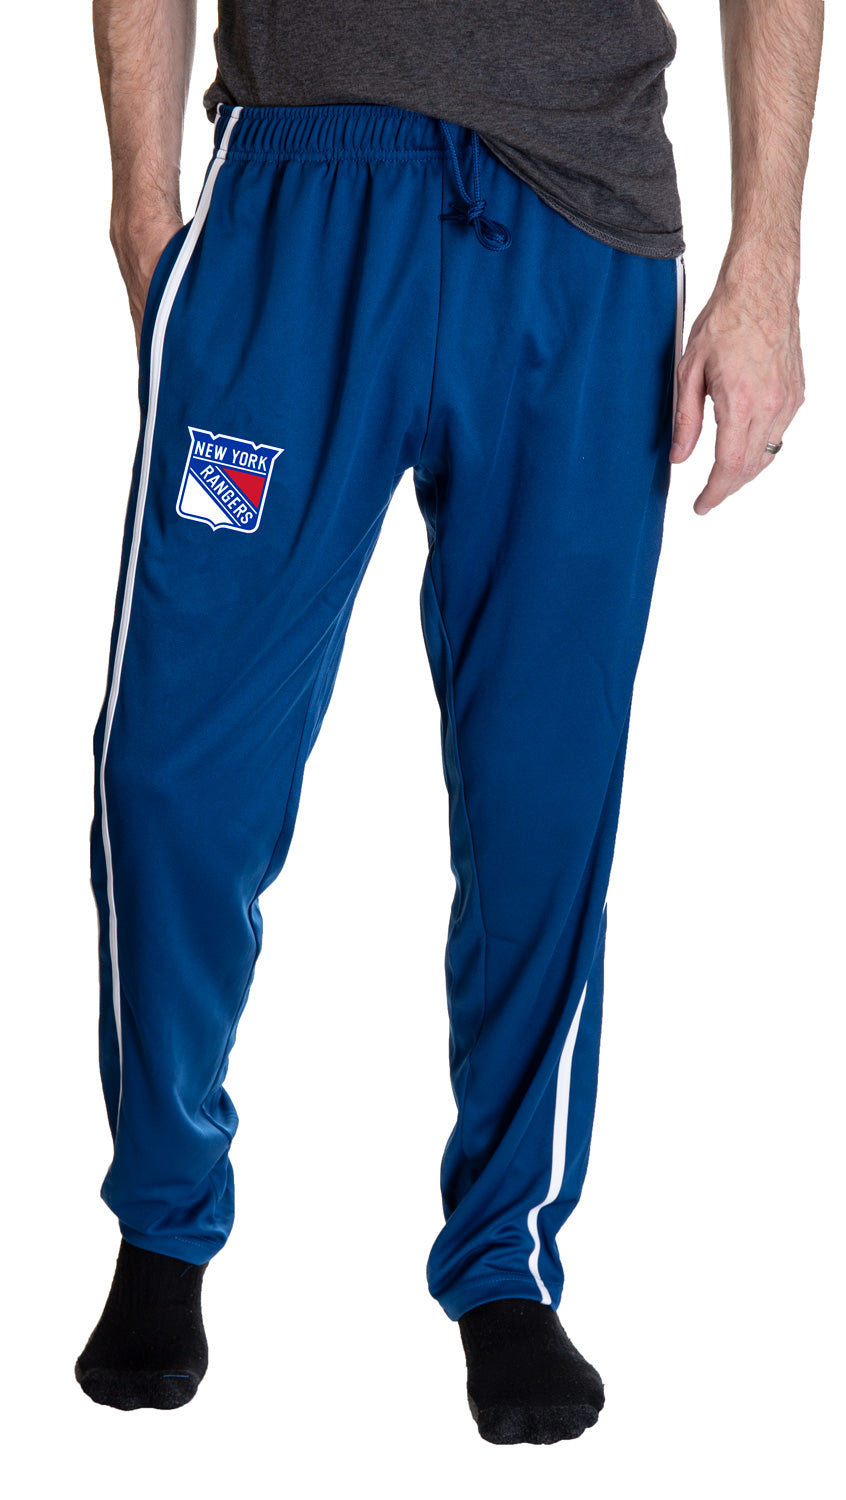 New York Rangers Striped Training Pants for Men